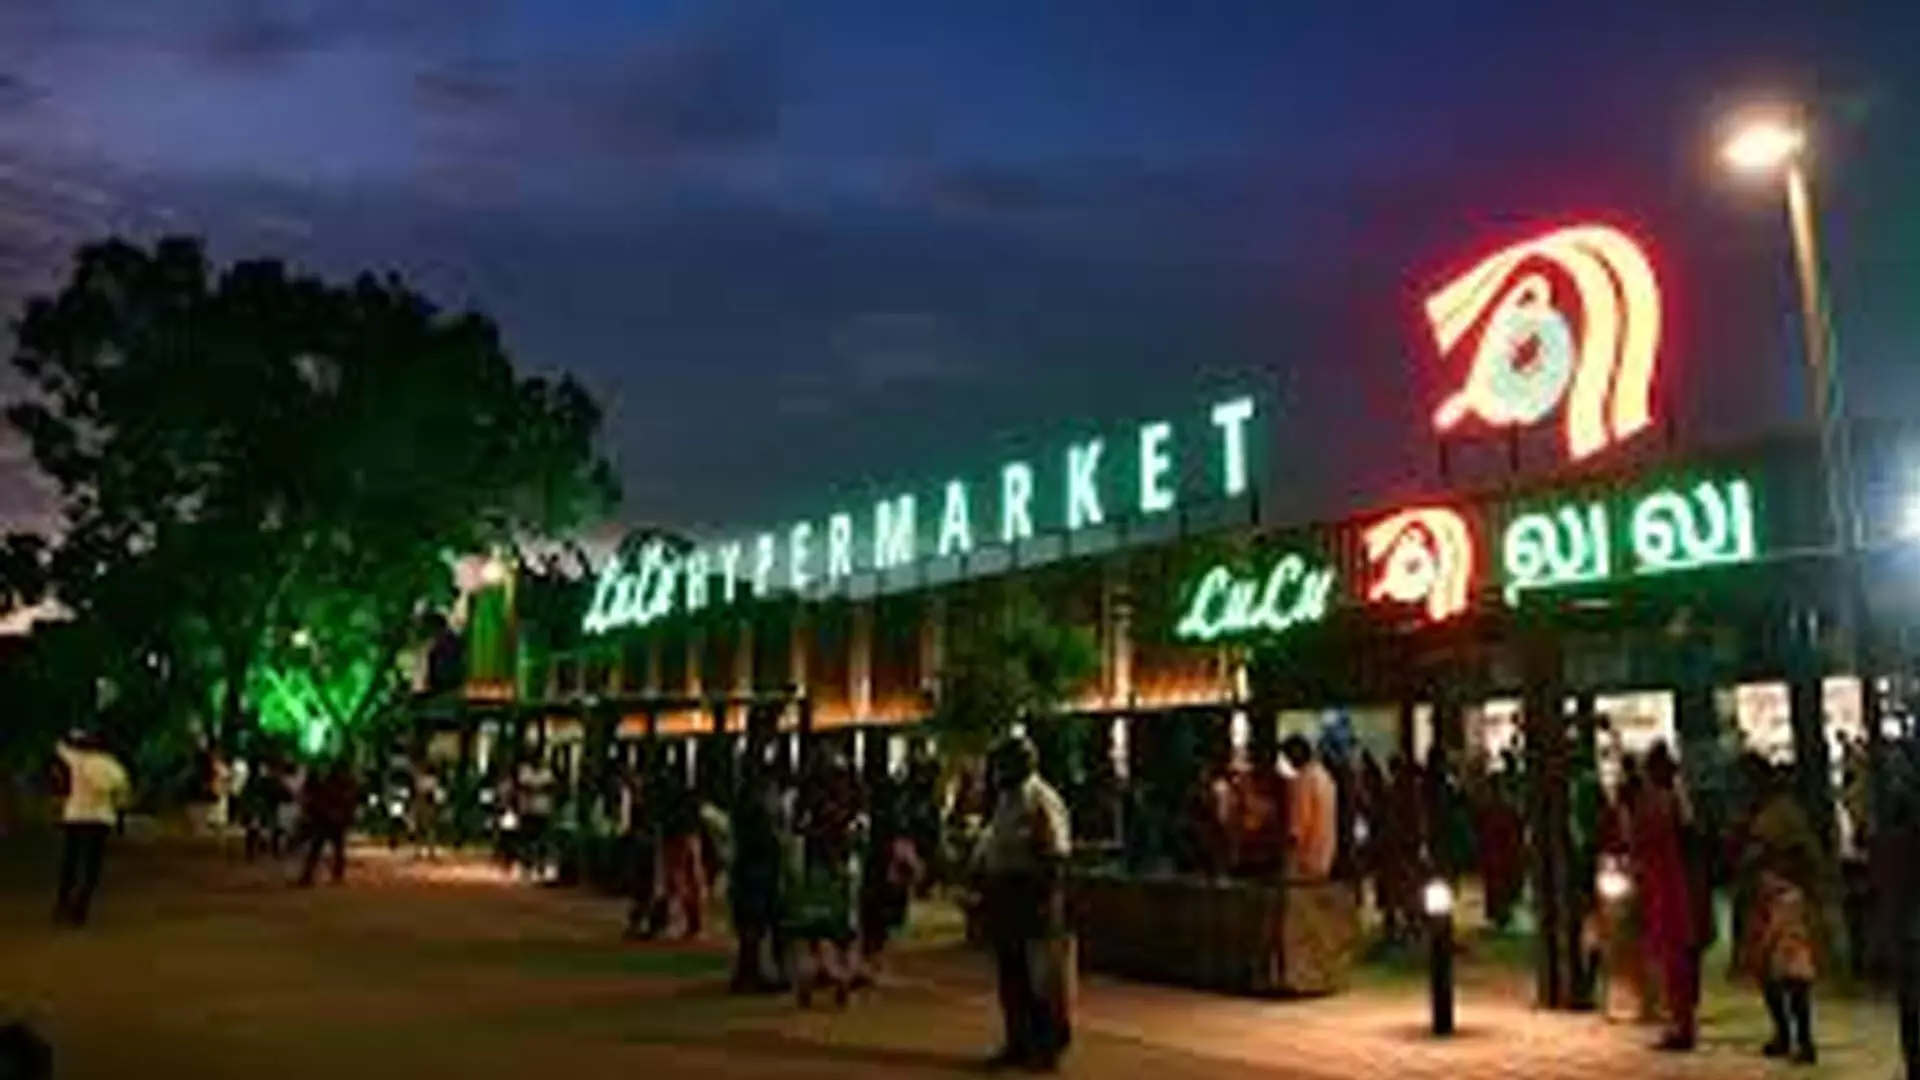 Chennai News: चेन्नई के मेट्रो स्टेशनों पर खुलेंगे लुलु हाइपरमार्केट